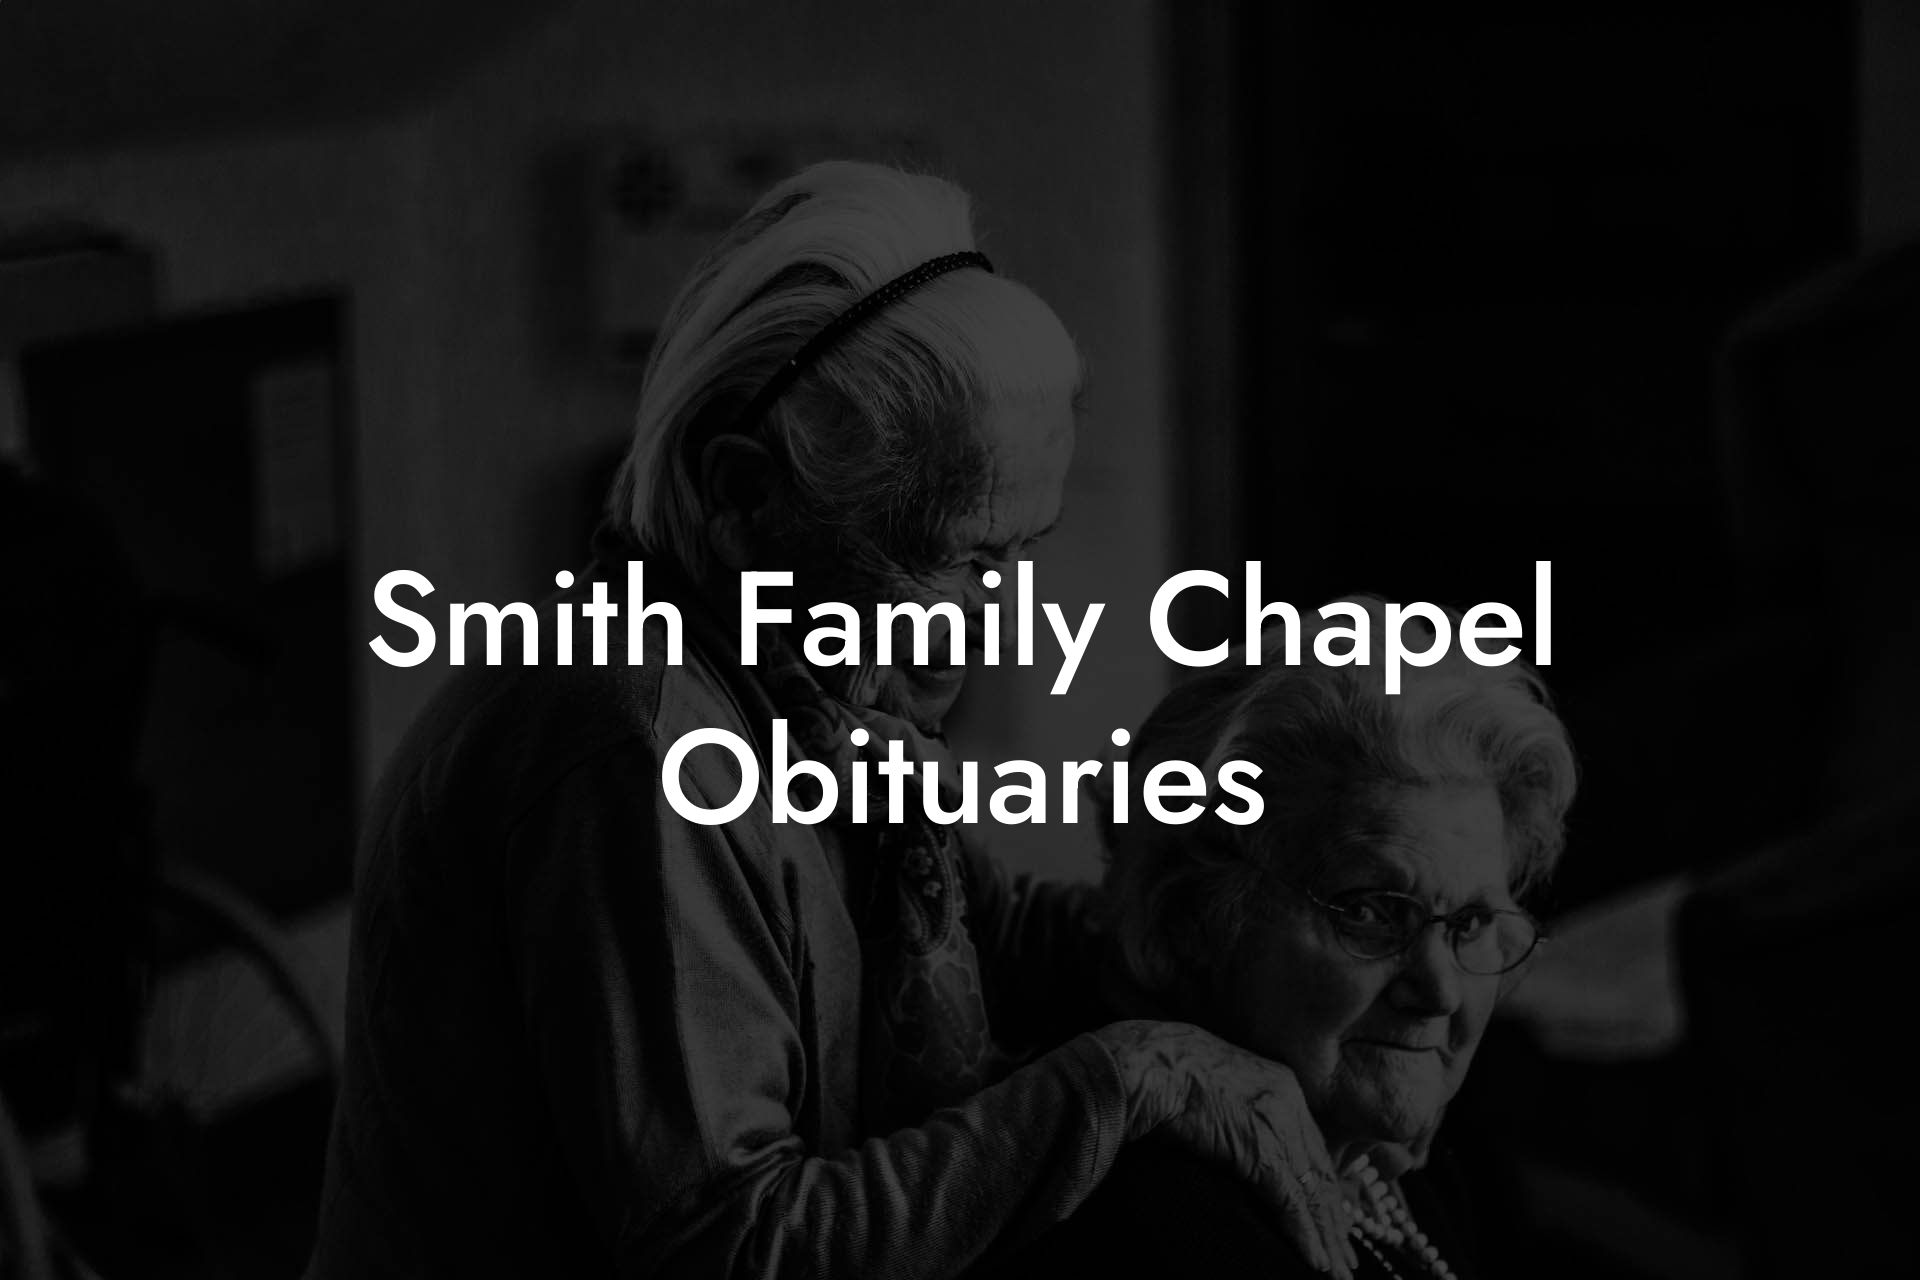 Smith Family Chapel Obituaries